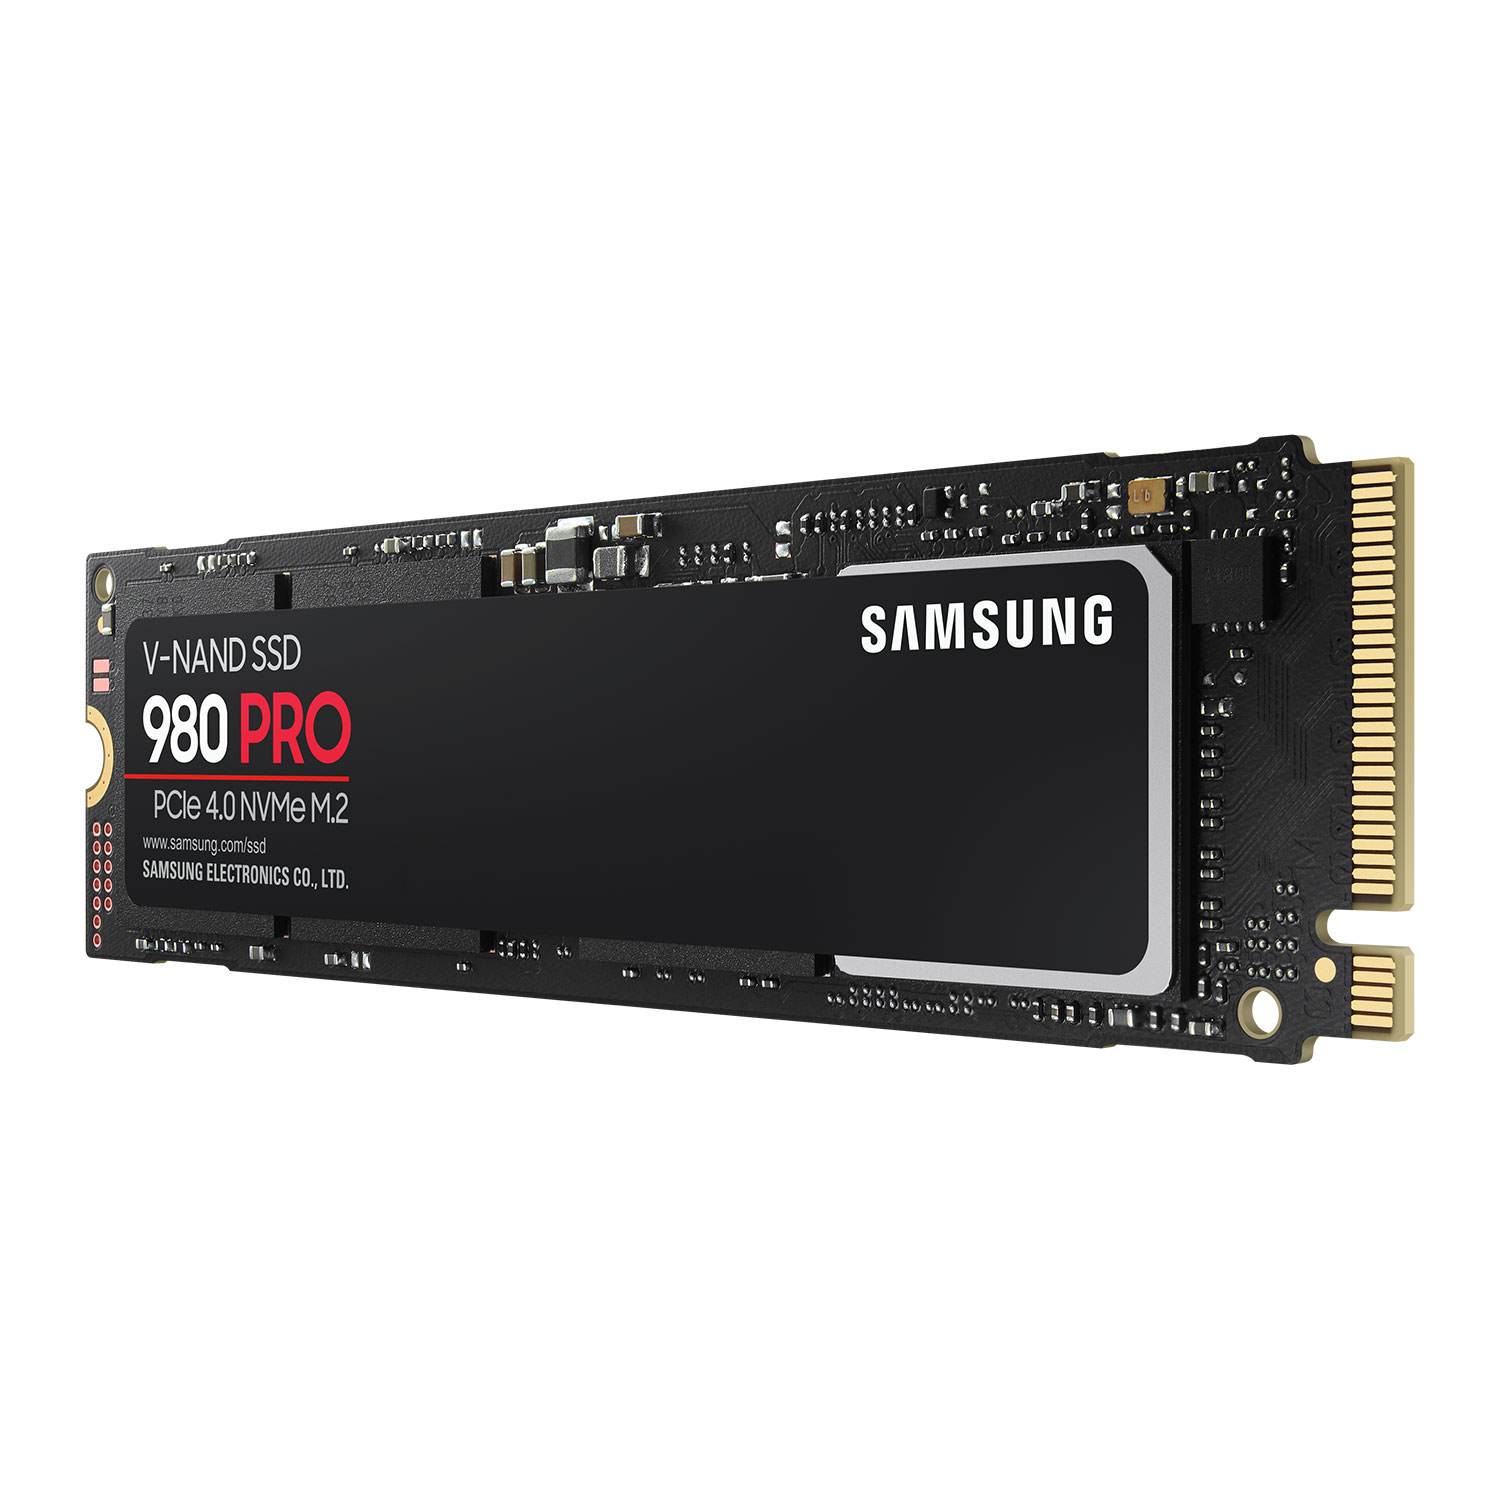 Immagine pubblicata in relazione al seguente contenuto: Il drive SSD monster Samsung 980 Pro M.2 PCIe Gen 4 2TB su uno store on line? | Nome immagine: news31409_Samsung-980-Pro-M.2-PCIe-Gen-4_2.jpg